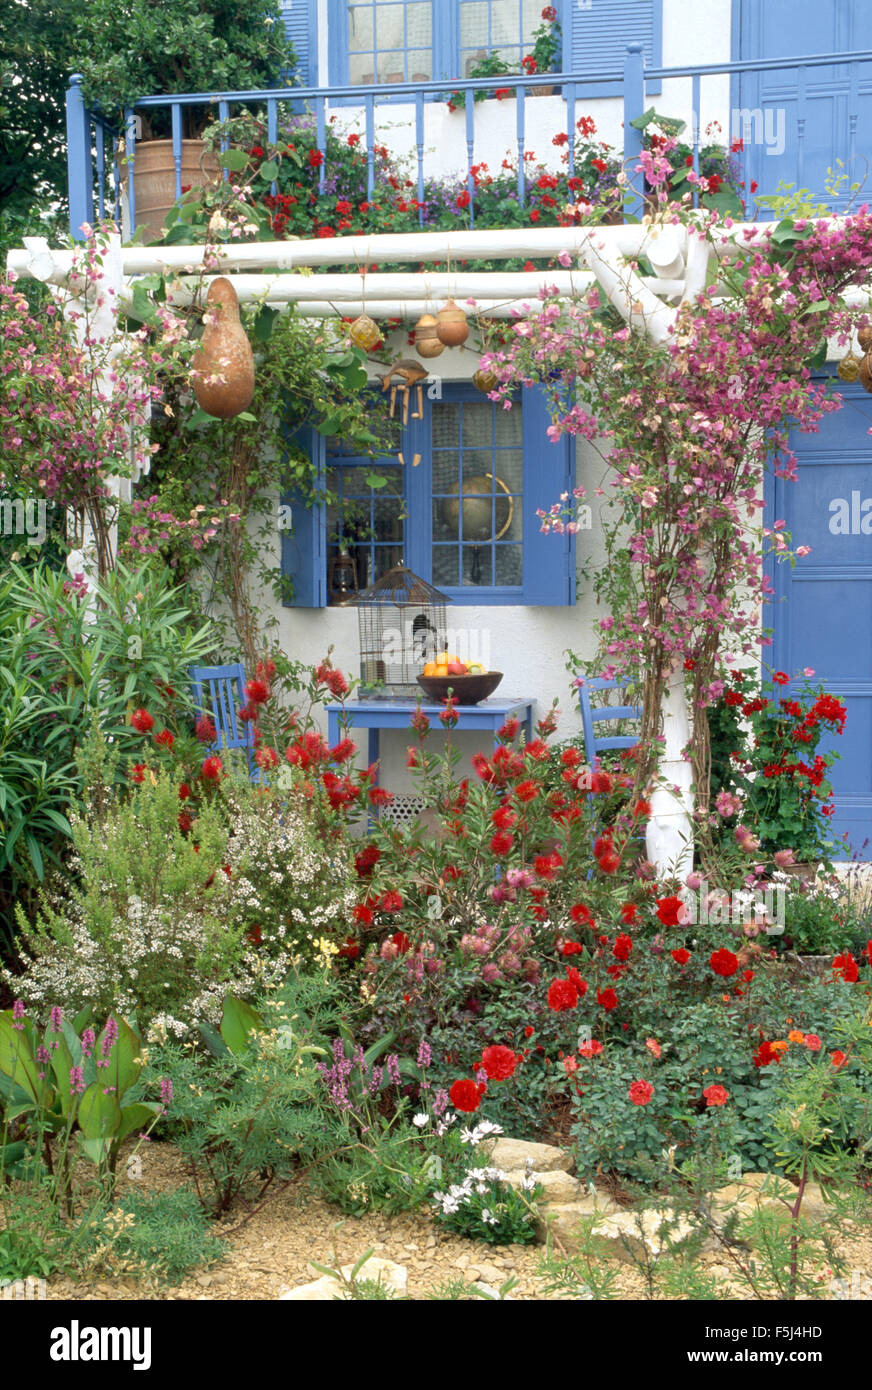 Bougainvillea rose sur bleu French House avec un balcon et des fenêtres aux volets bleus Banque D'Images